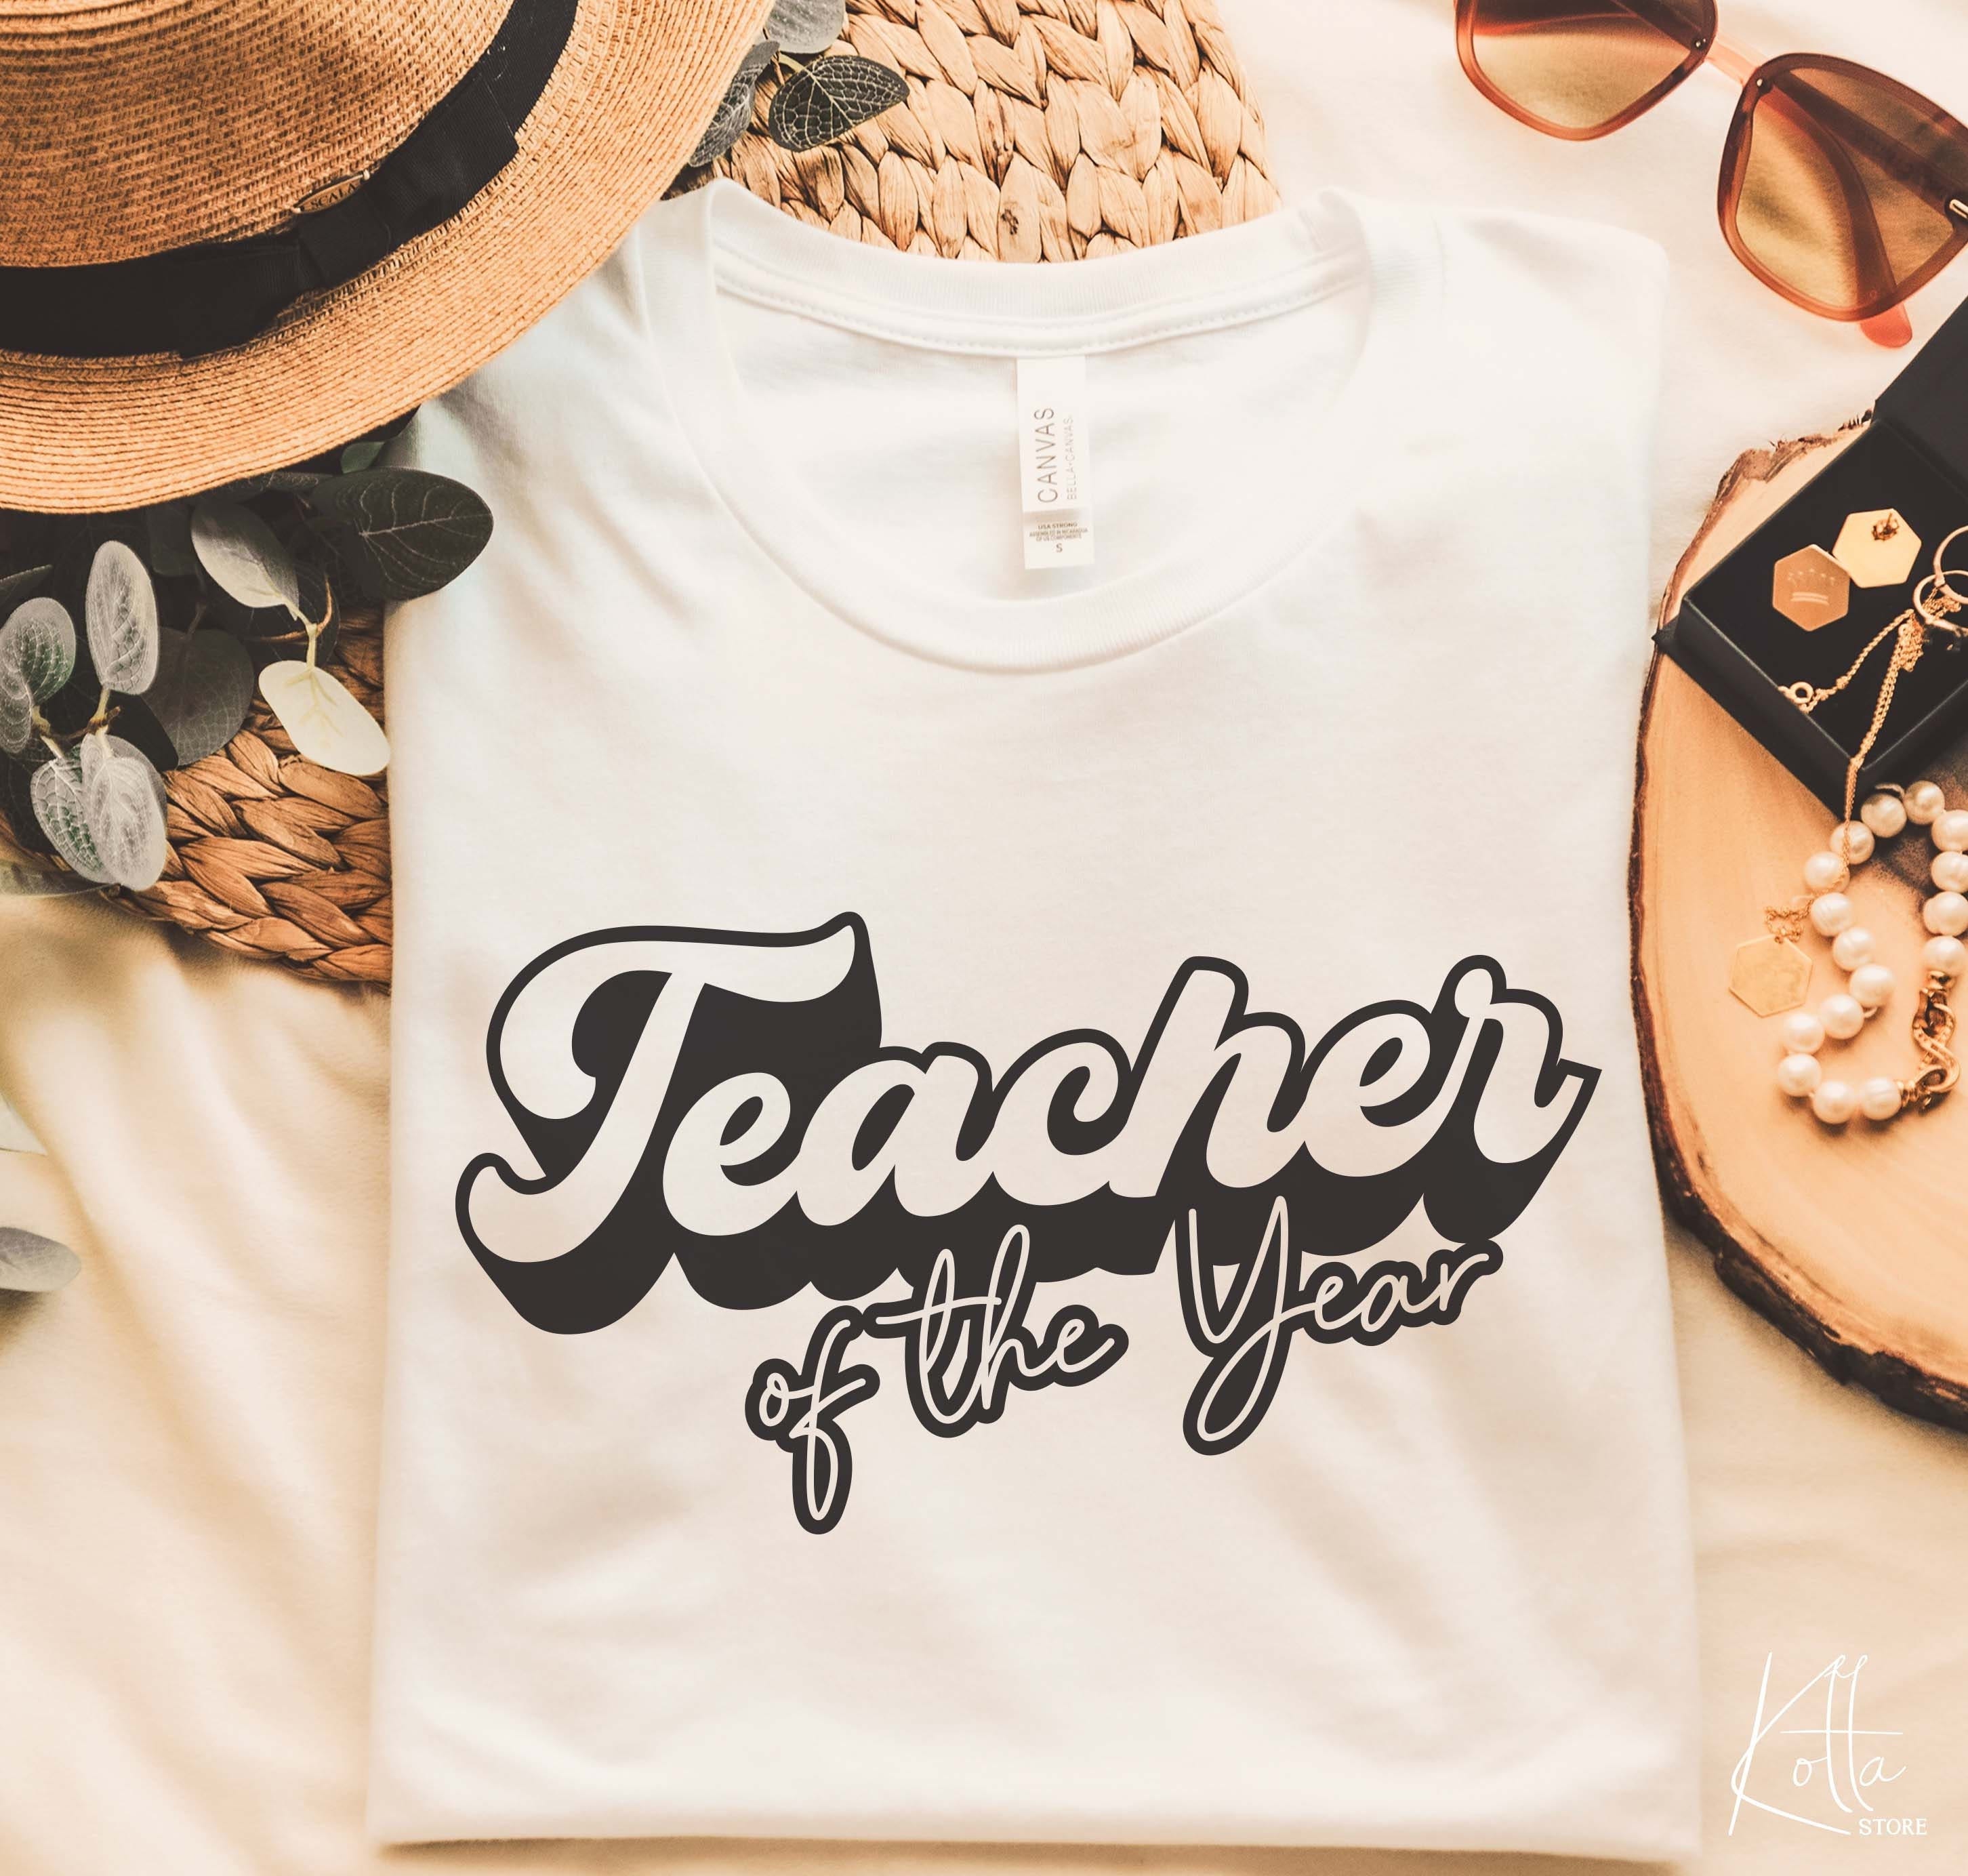 Teacher Of The Year svg, Teacher life svg, School Teacher svg, Teacher Quotes shirt gift idea for teacher svg, png, dfx, Cricut cut file.